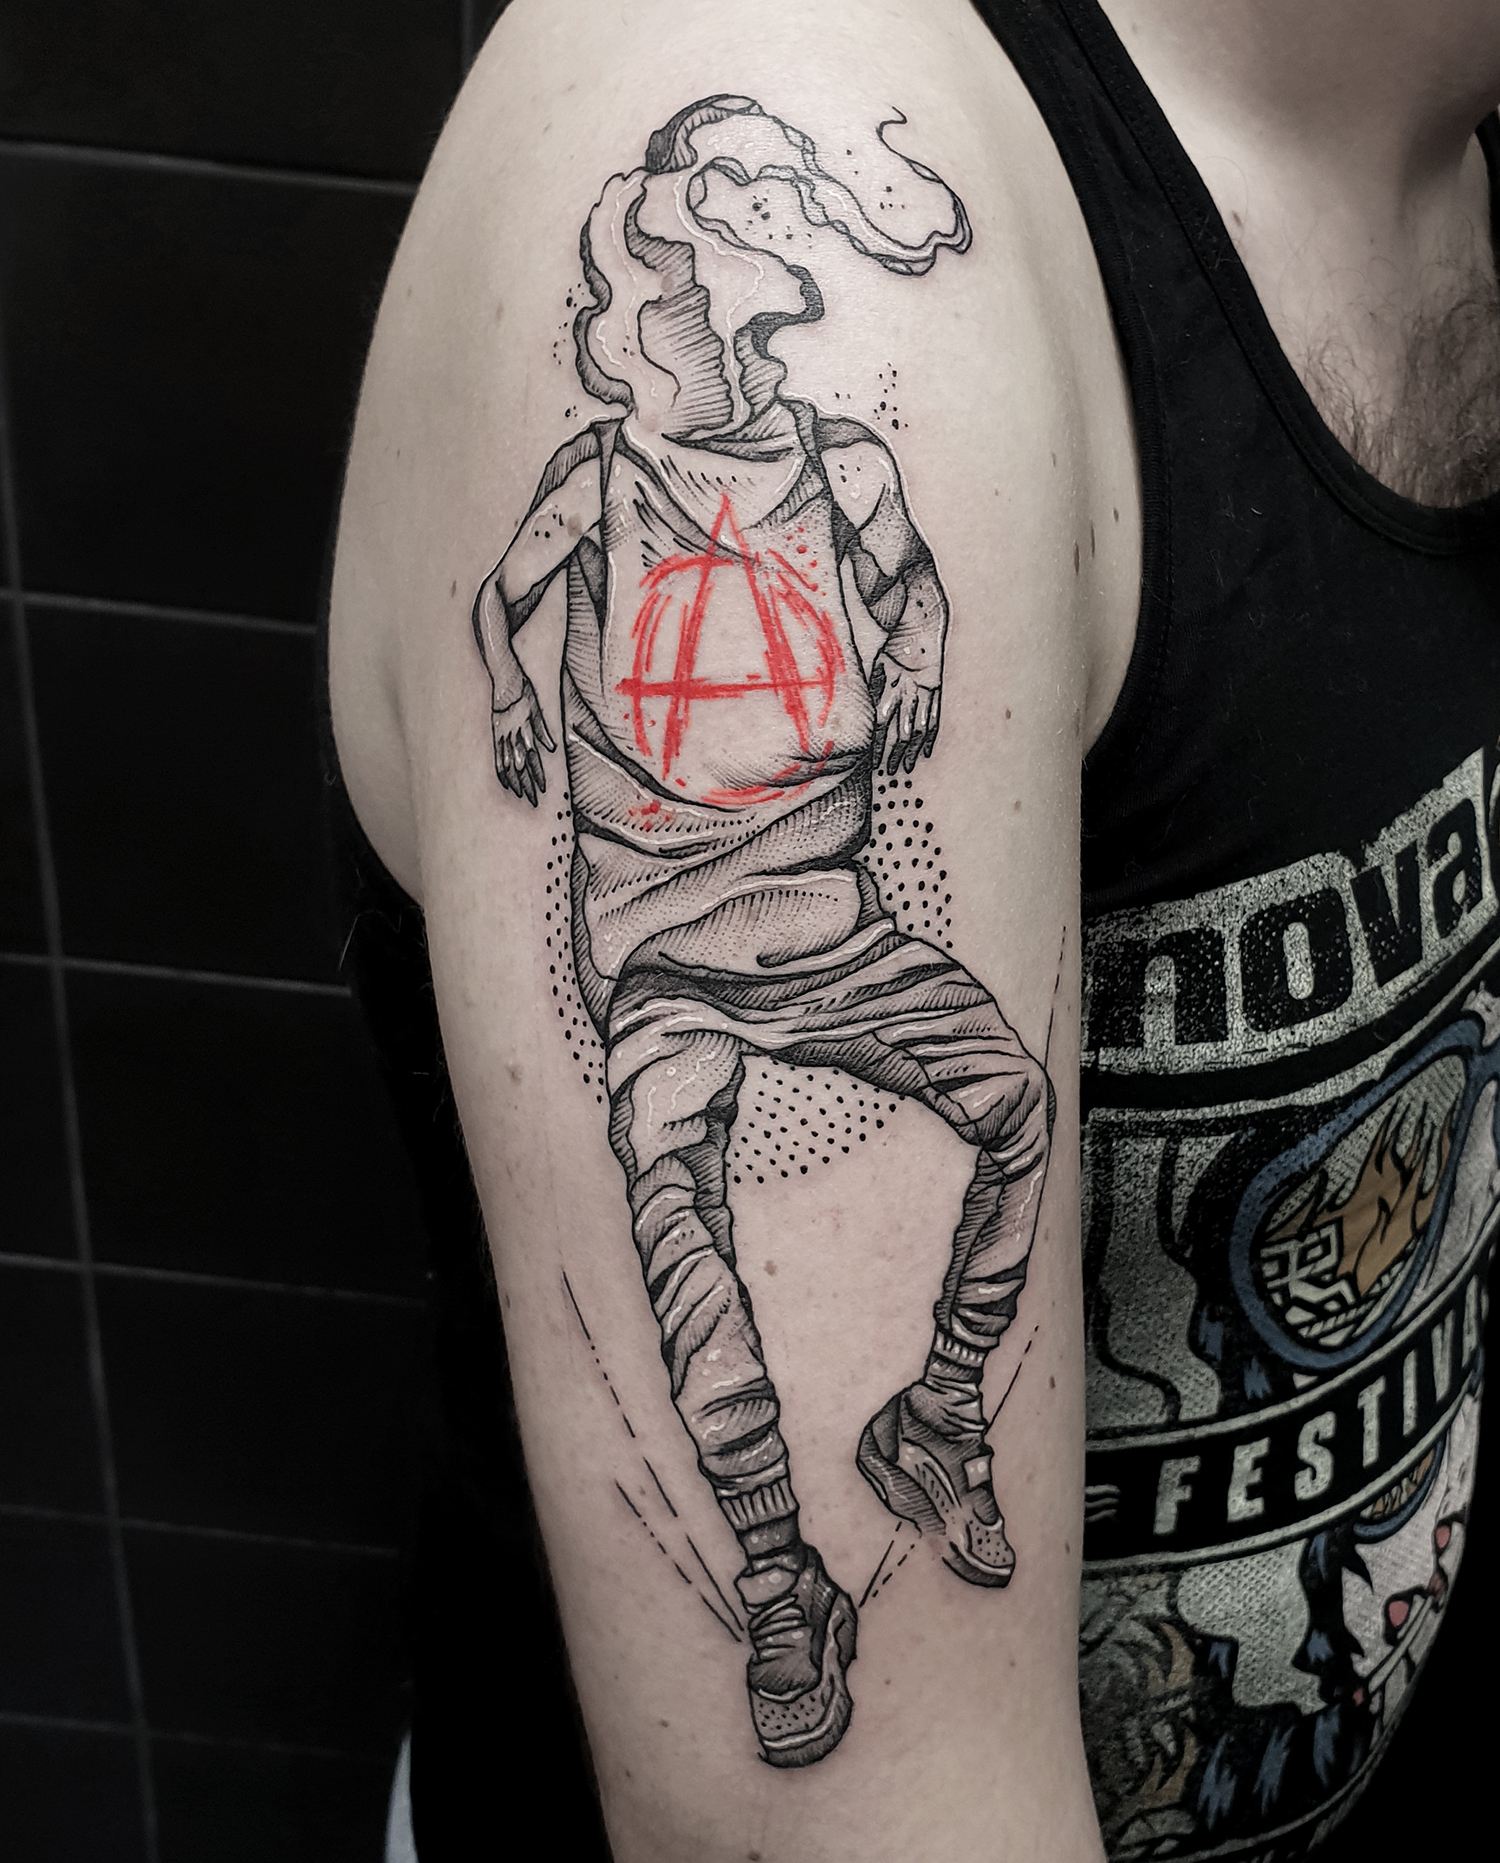 anarchy tattoo on arm